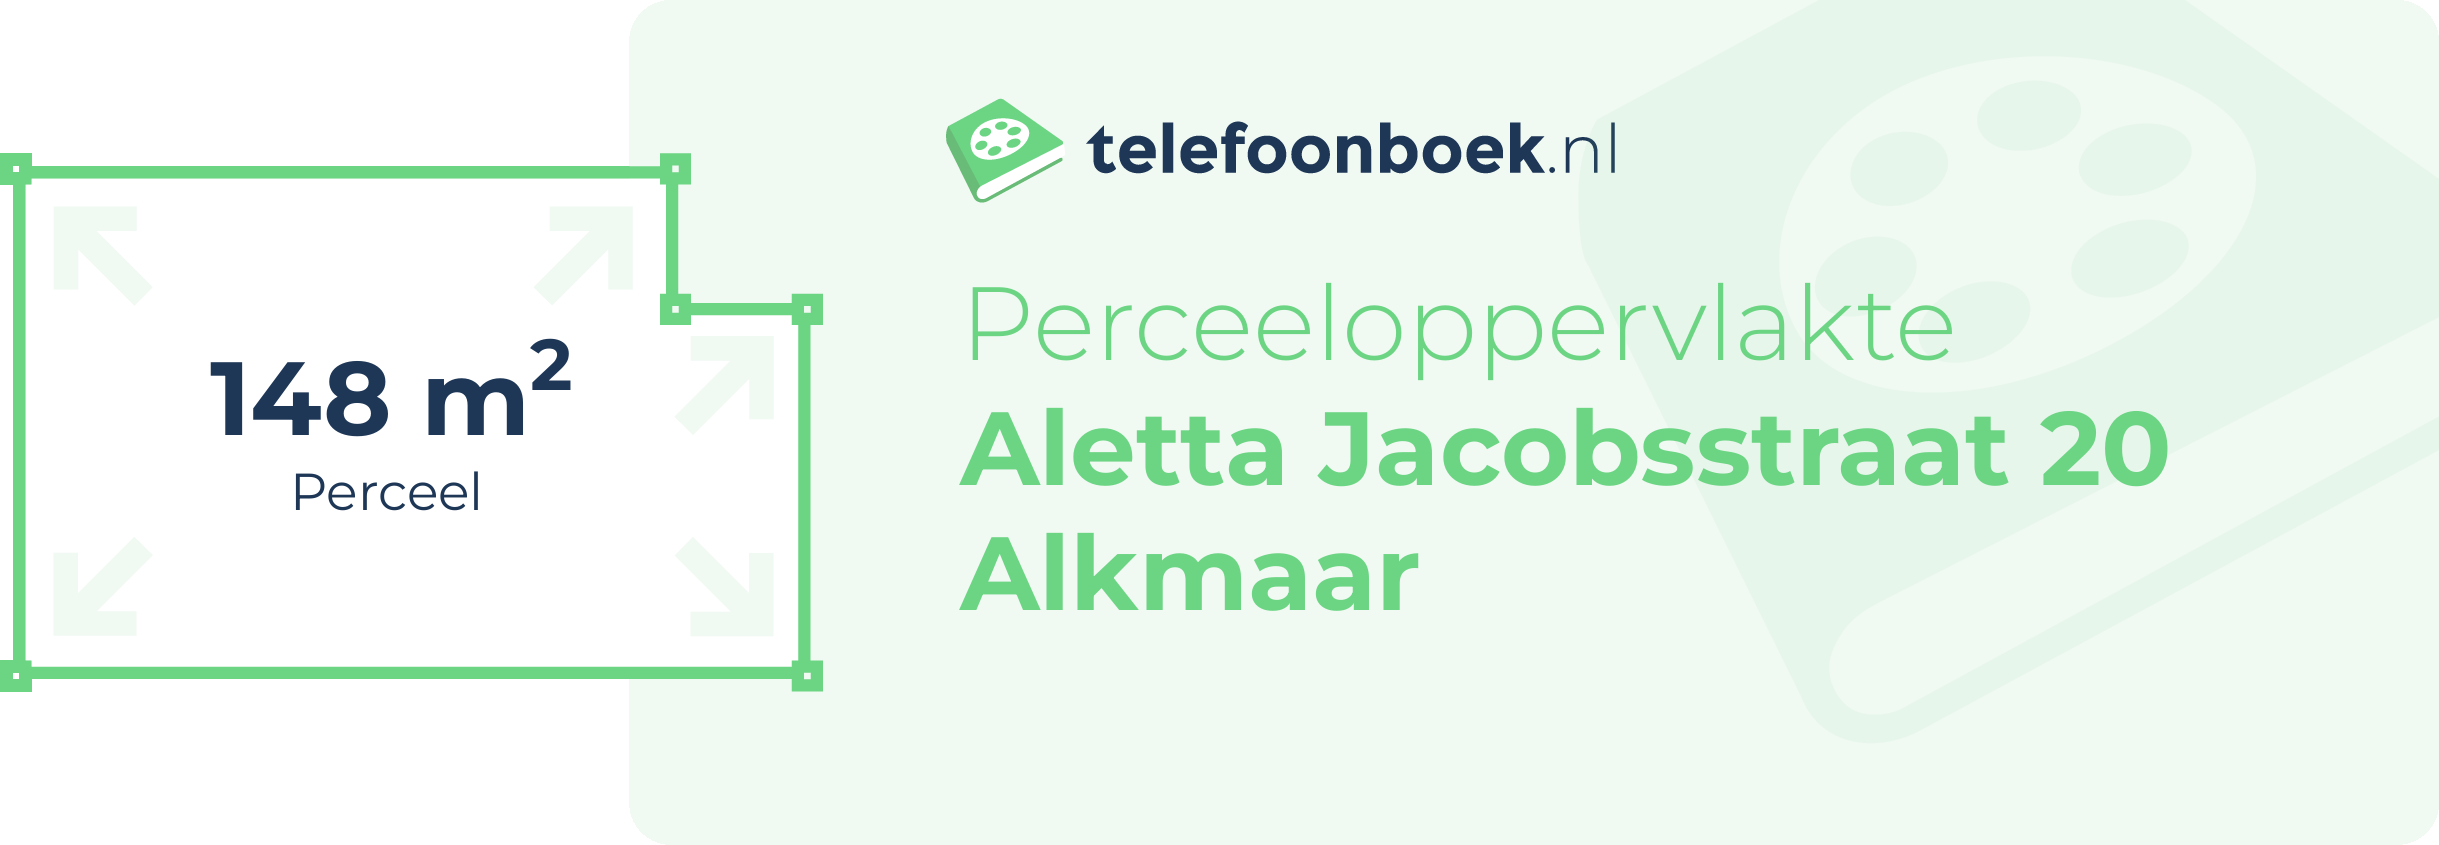 Perceeloppervlakte Aletta Jacobsstraat 20 Alkmaar